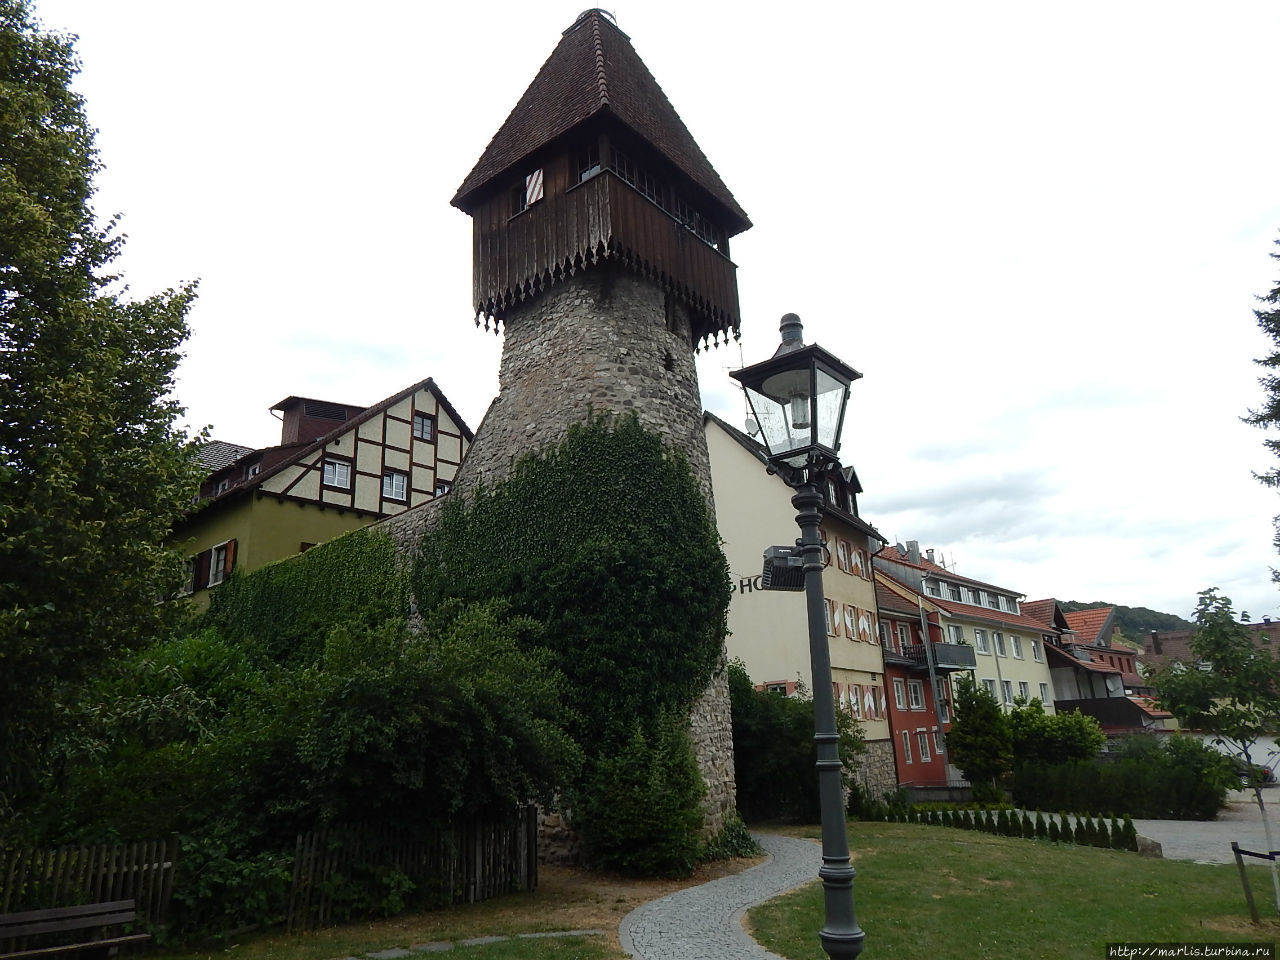 Остатки средневековой городской стены. Журавлиная башня Вальдсхут-Тинген, Германия